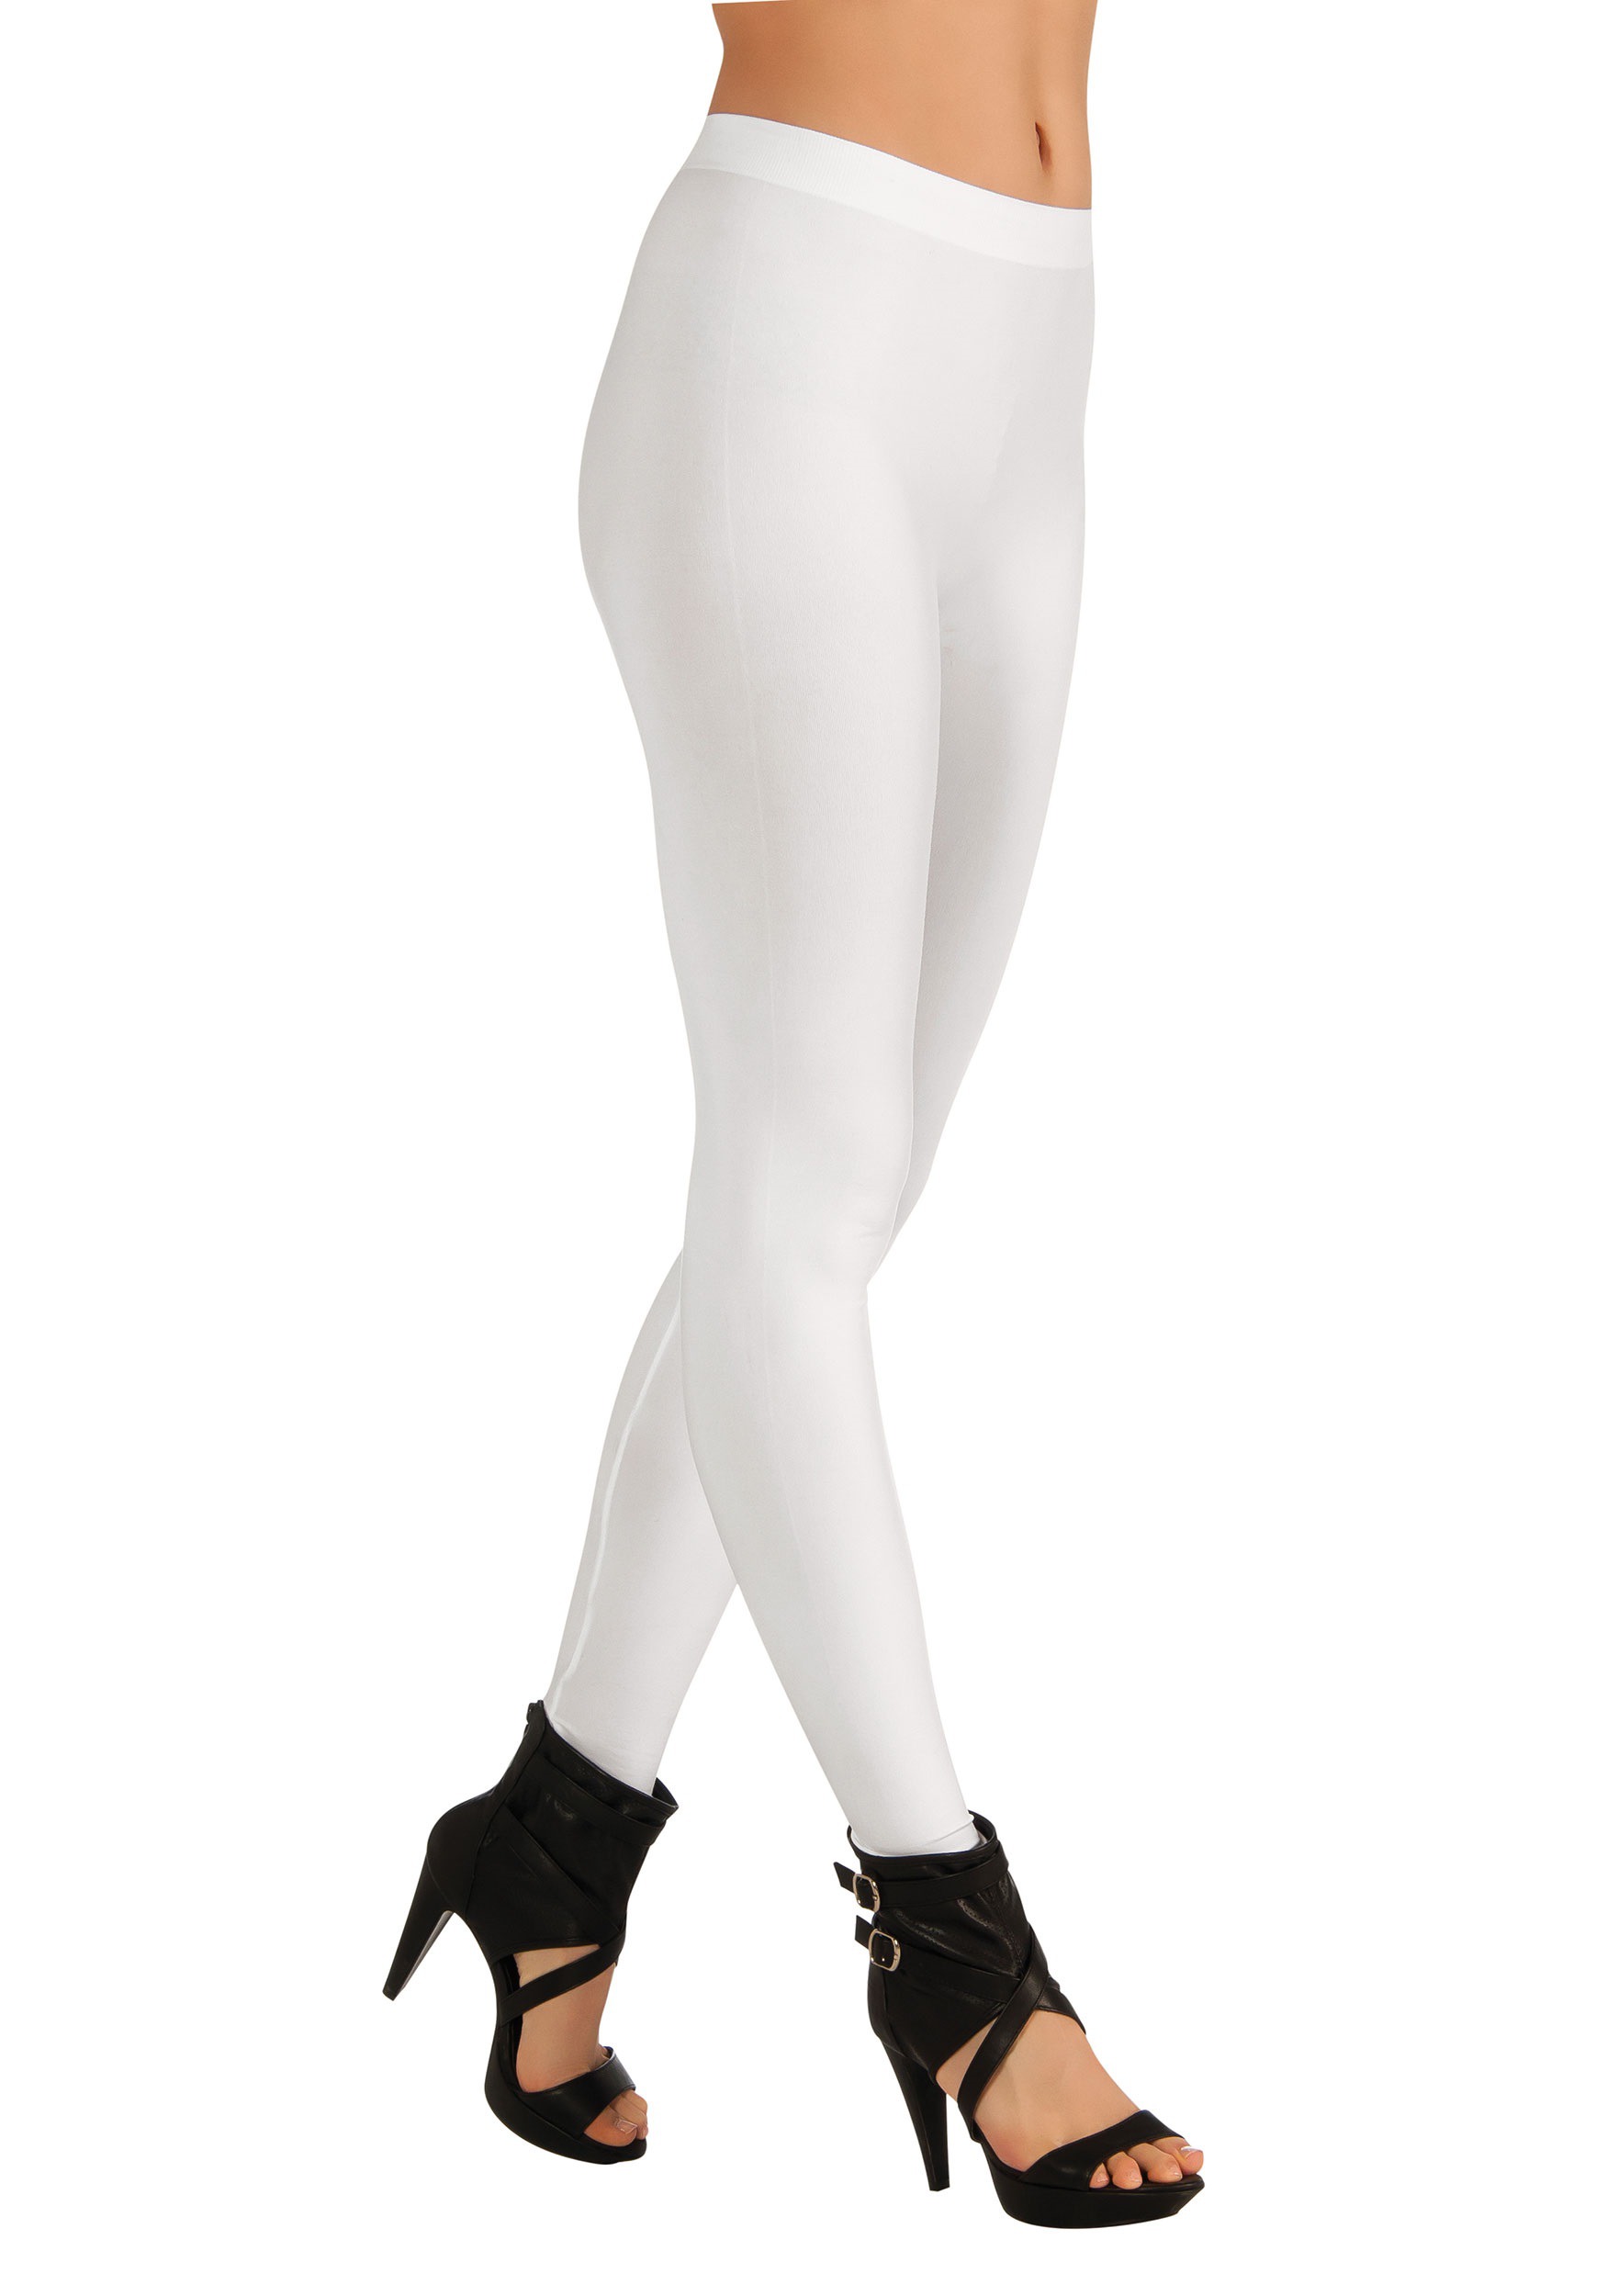 Mujer use leggins blancos en blanco, aislados en gris